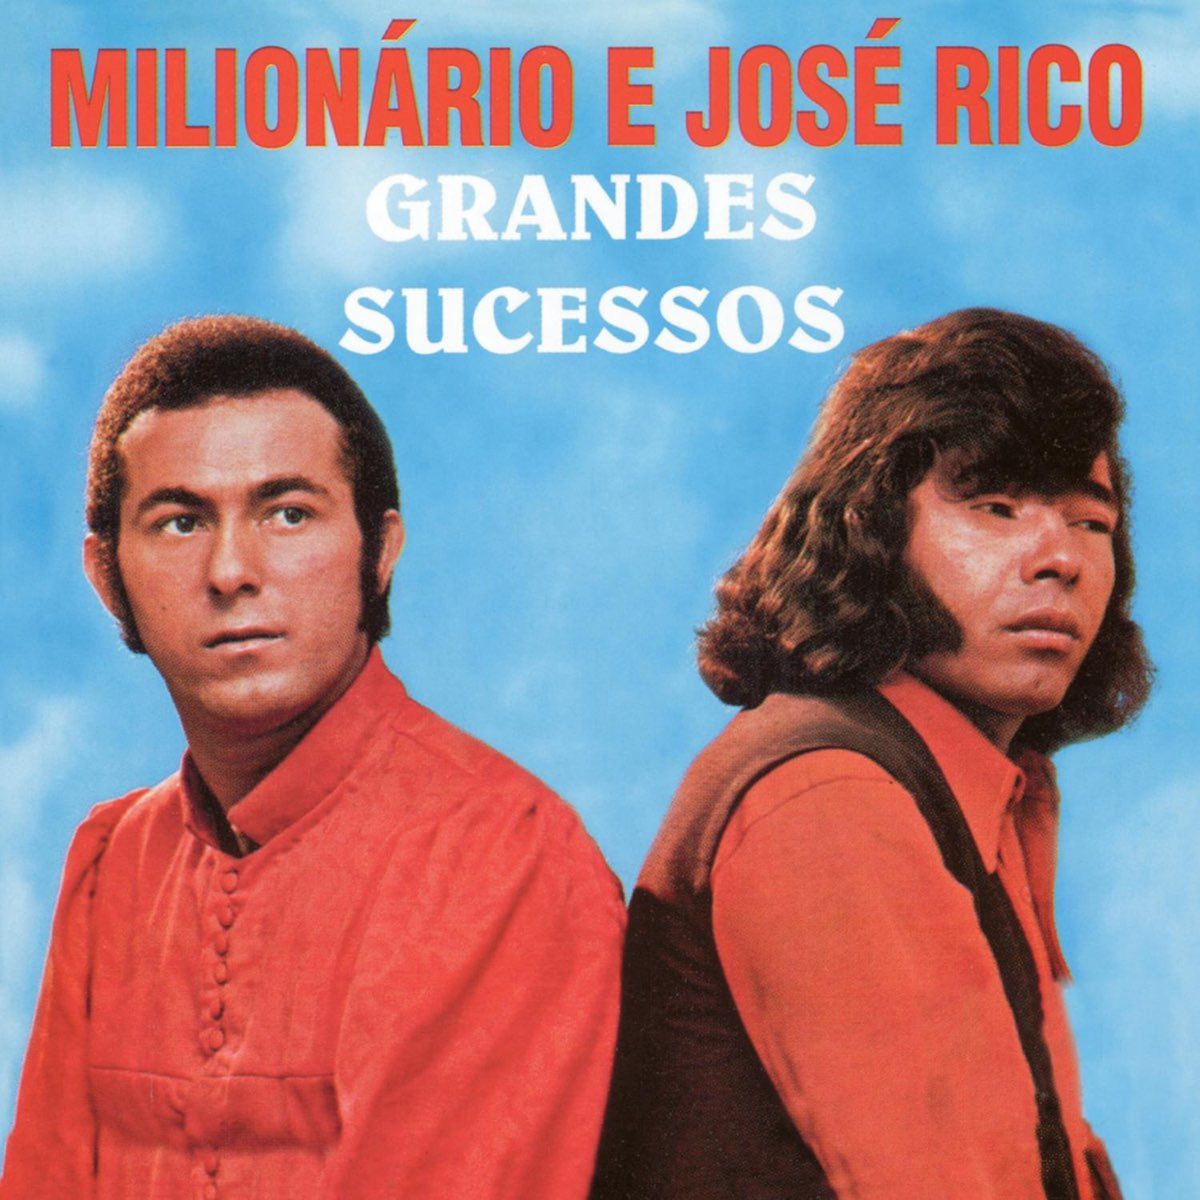 QUEM DISSE QUE ESQUECI (D) Milionário & José Rico (-1 tom